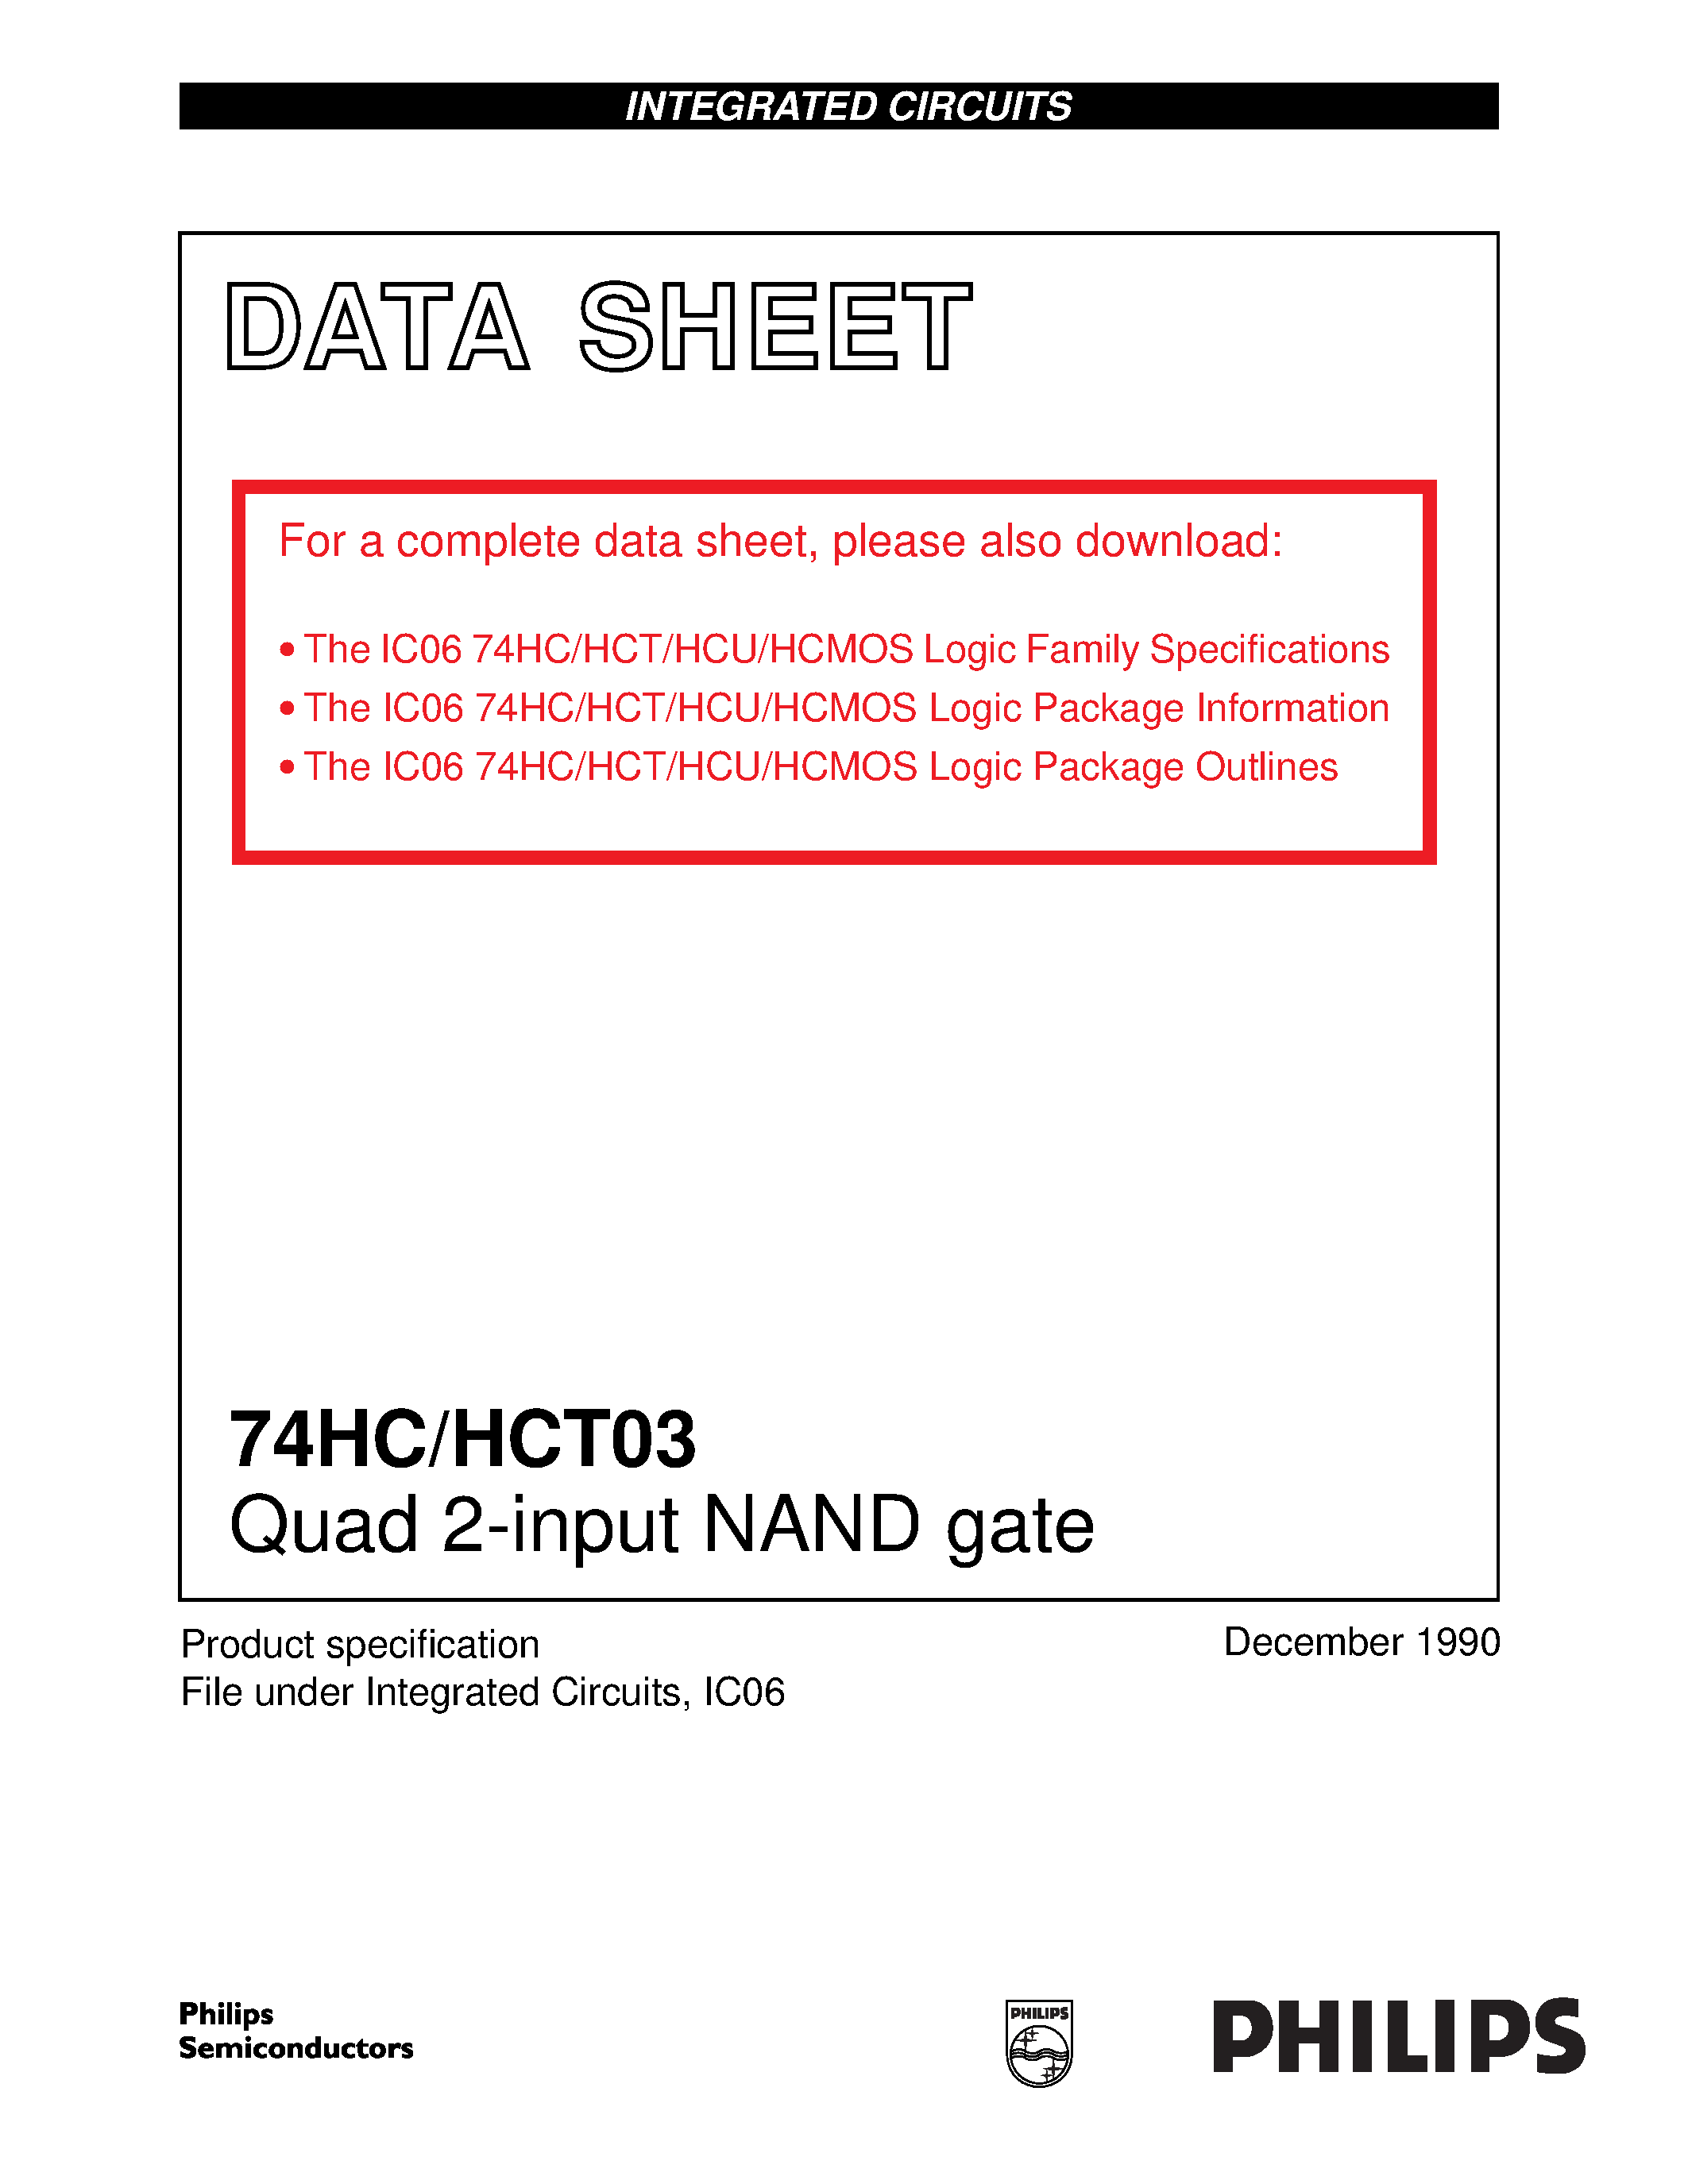 Даташит 74HC03 - Quad 2-input NAND gate страница 1